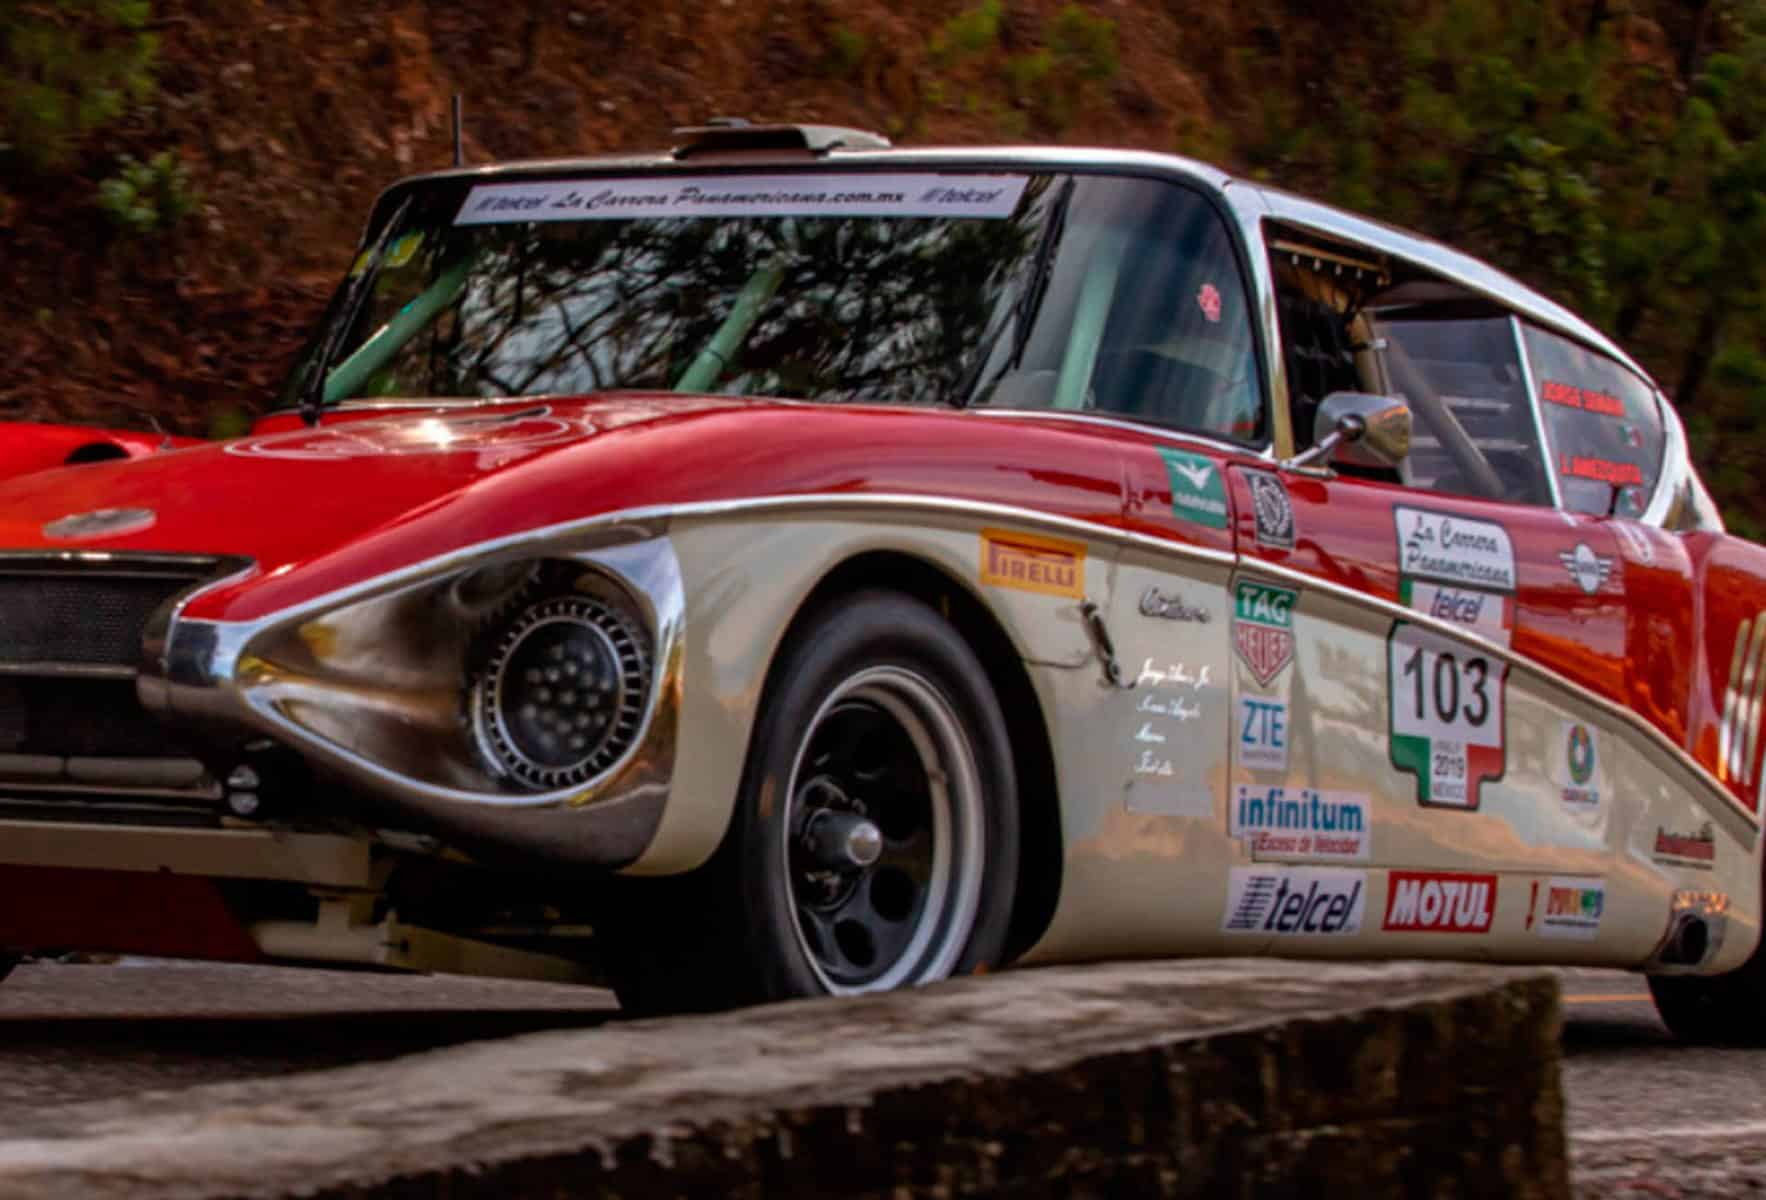 Last of a Breed – La Carrera Panamericana - Collier Automedia